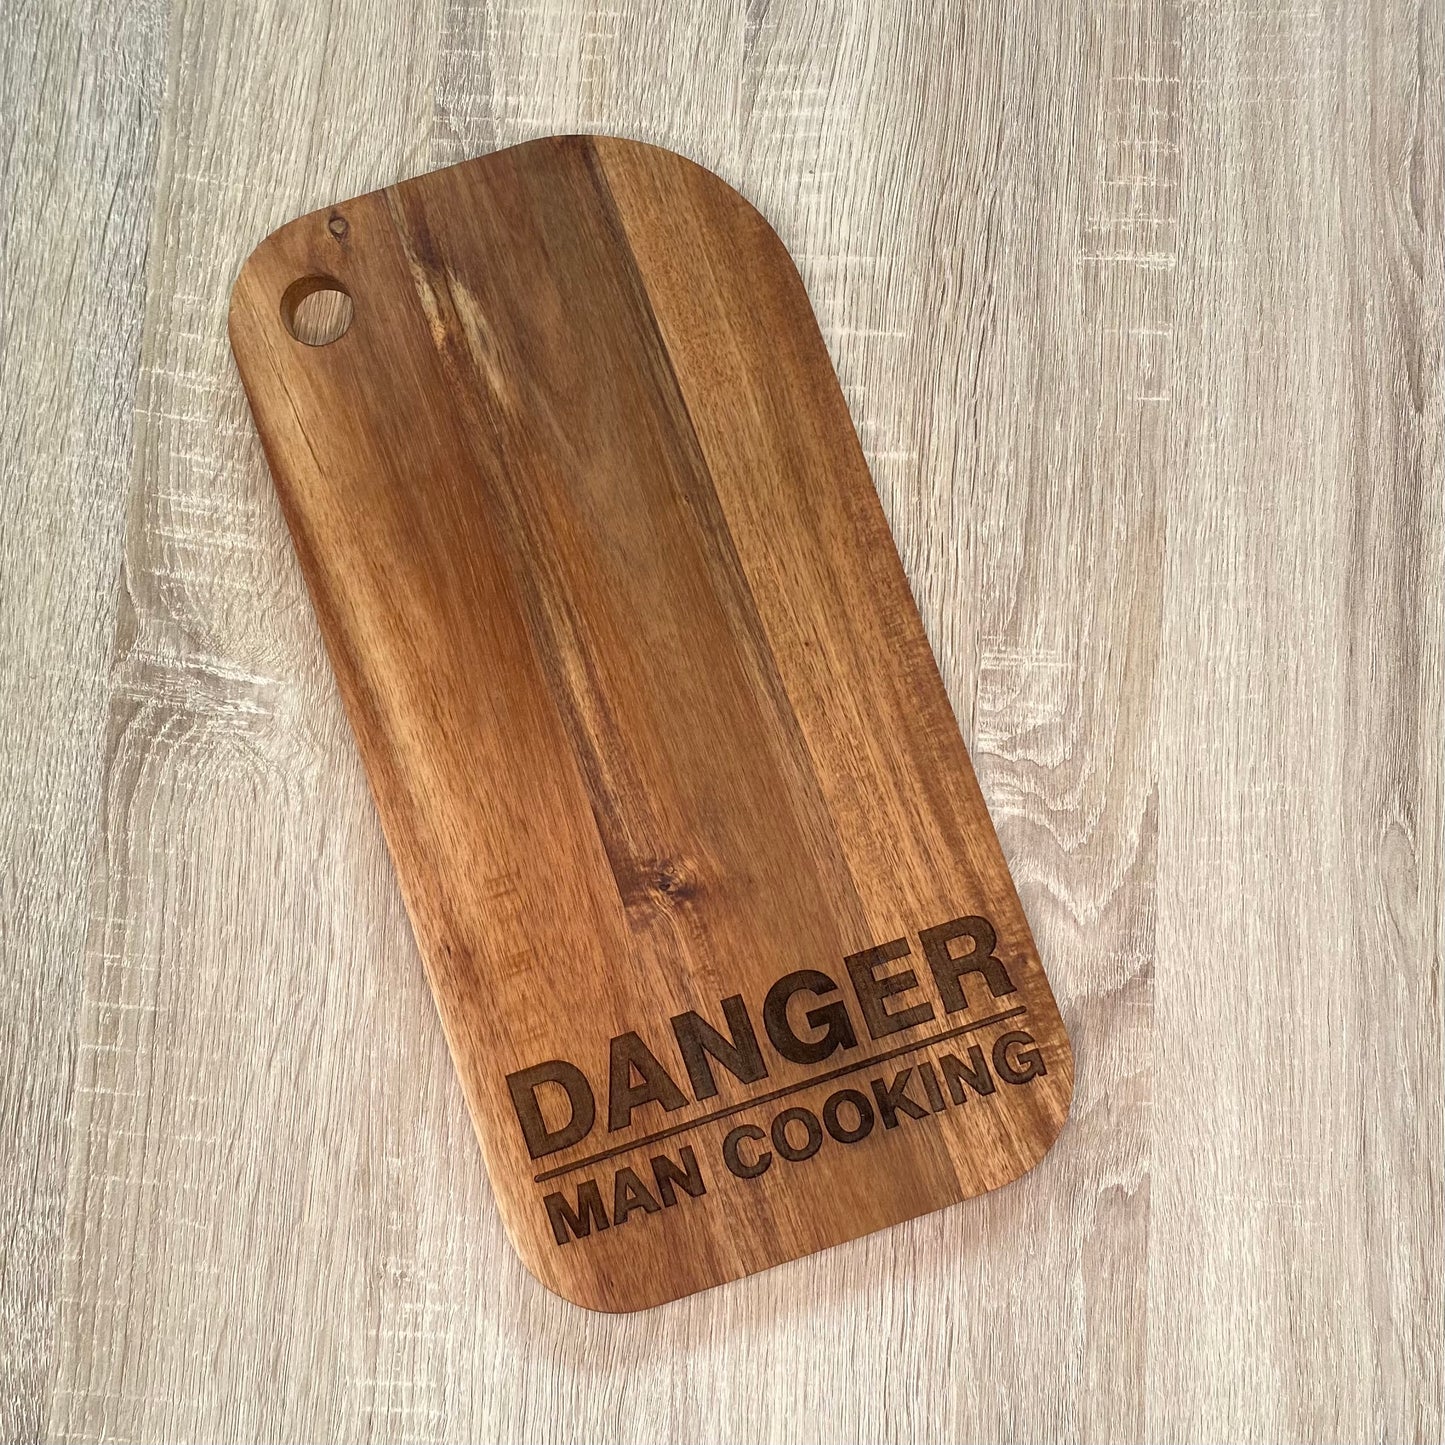 Danger man cooking